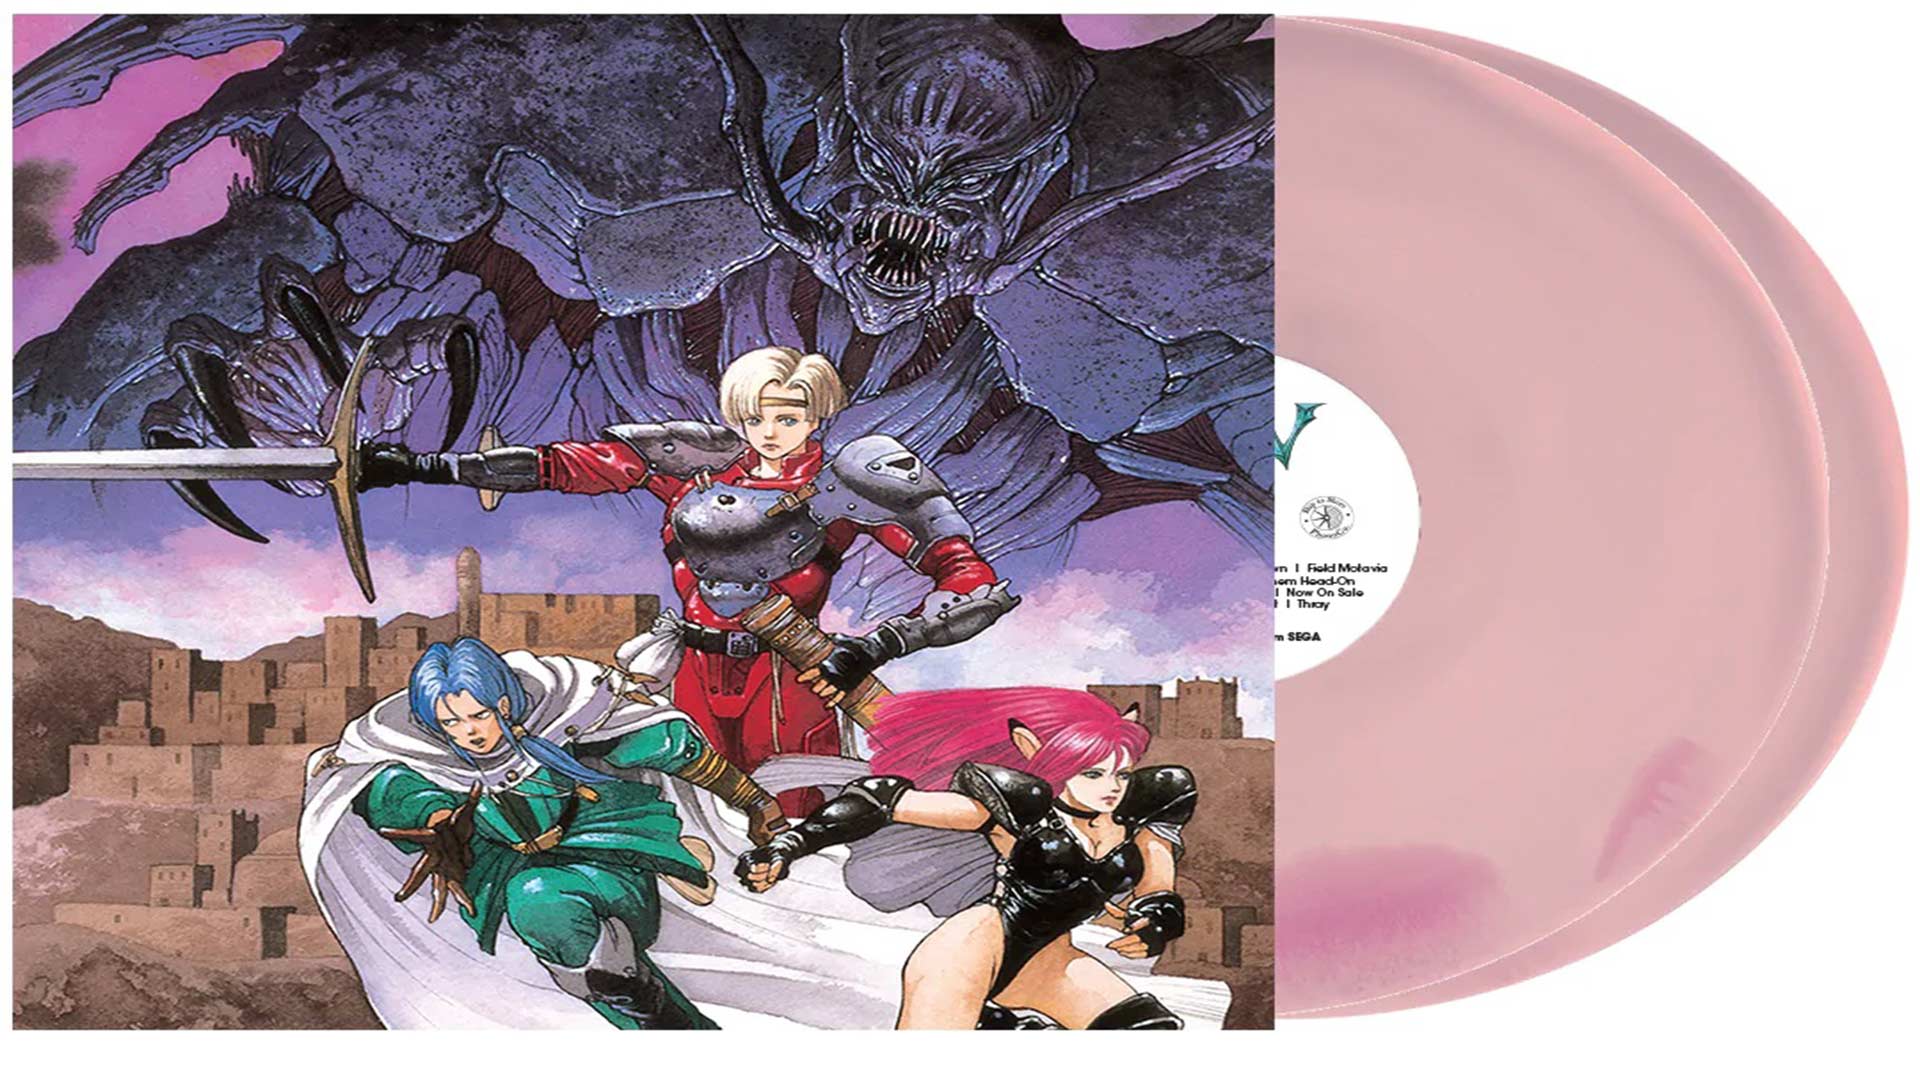 Phantasy Star IV Soundtrack erscheint auf Vinyl